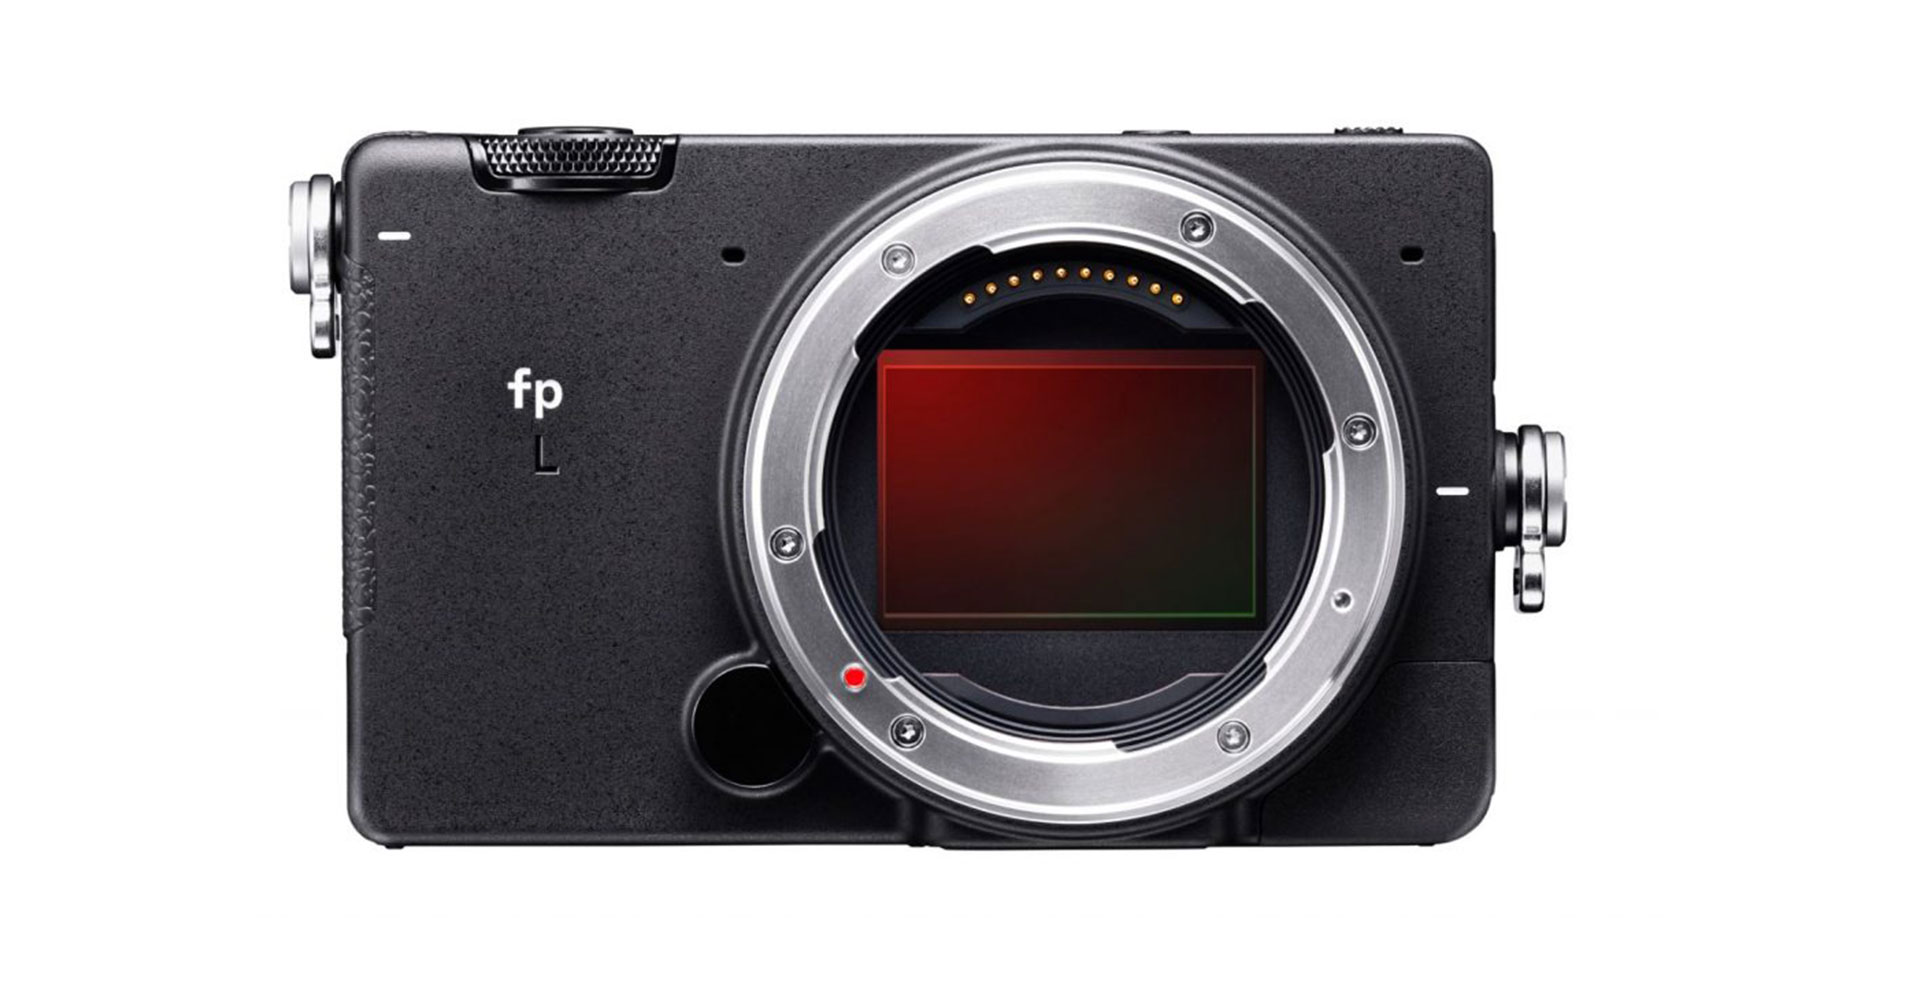 เปิดตัว SIGMA fp L กล้องฟูลเฟรมตัวเล็ก 61 ล้านพิกเซล ระบบโฟกัส Hybrid AF พร้อมช่องมองภาพ EVF สุดเท่